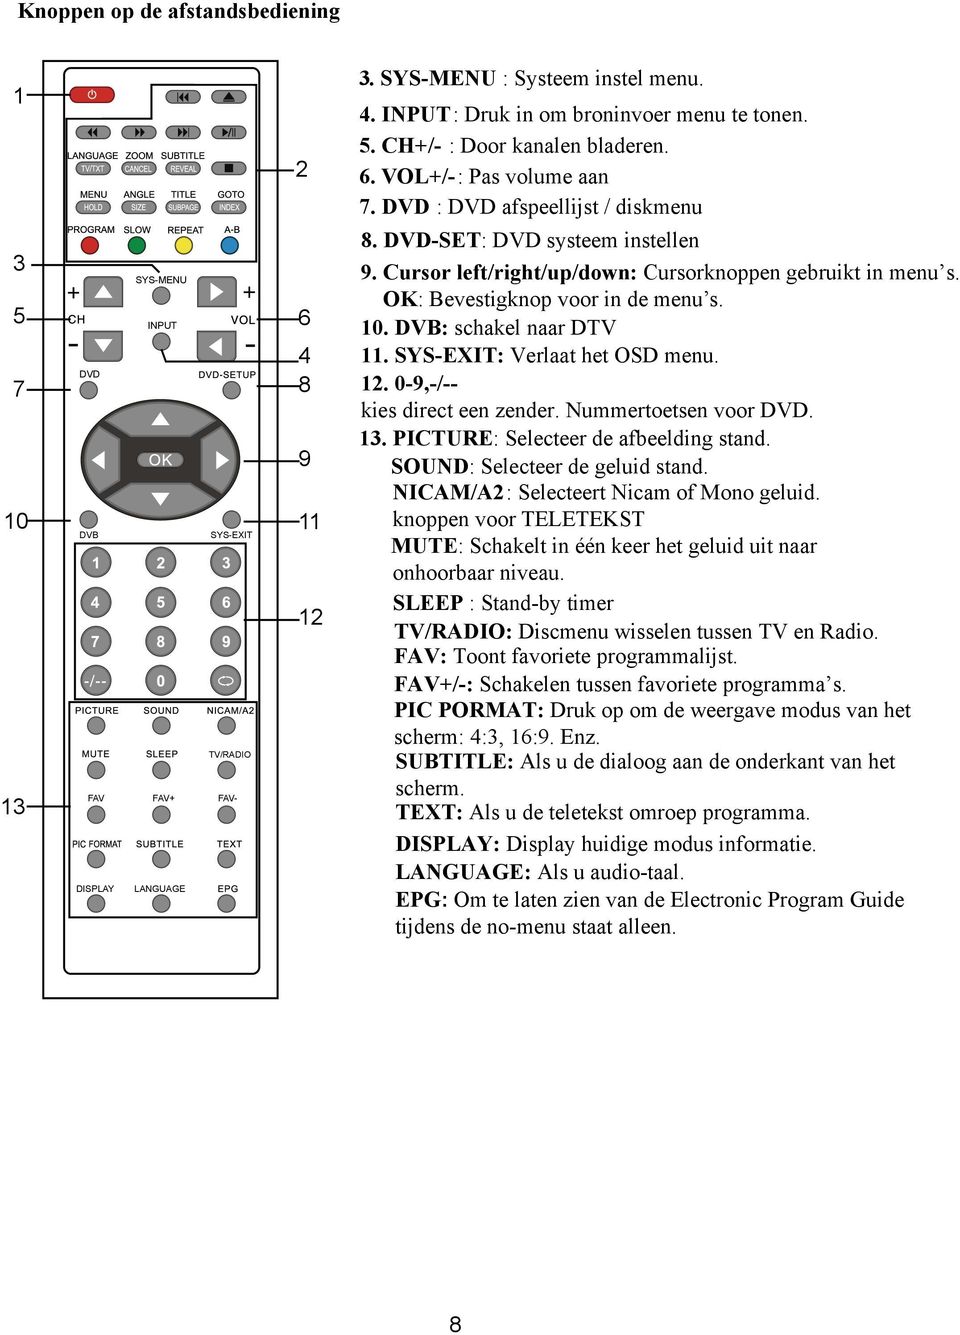 OK: Bevestigknop voor in de menu s. 10. DVB: schakel naar DTV 11. SYS-EXIT: Verlaat het OSD menu. 12. 0-9,-/-- kies direct een zender. Nummertoetsen voor DVD. 13.